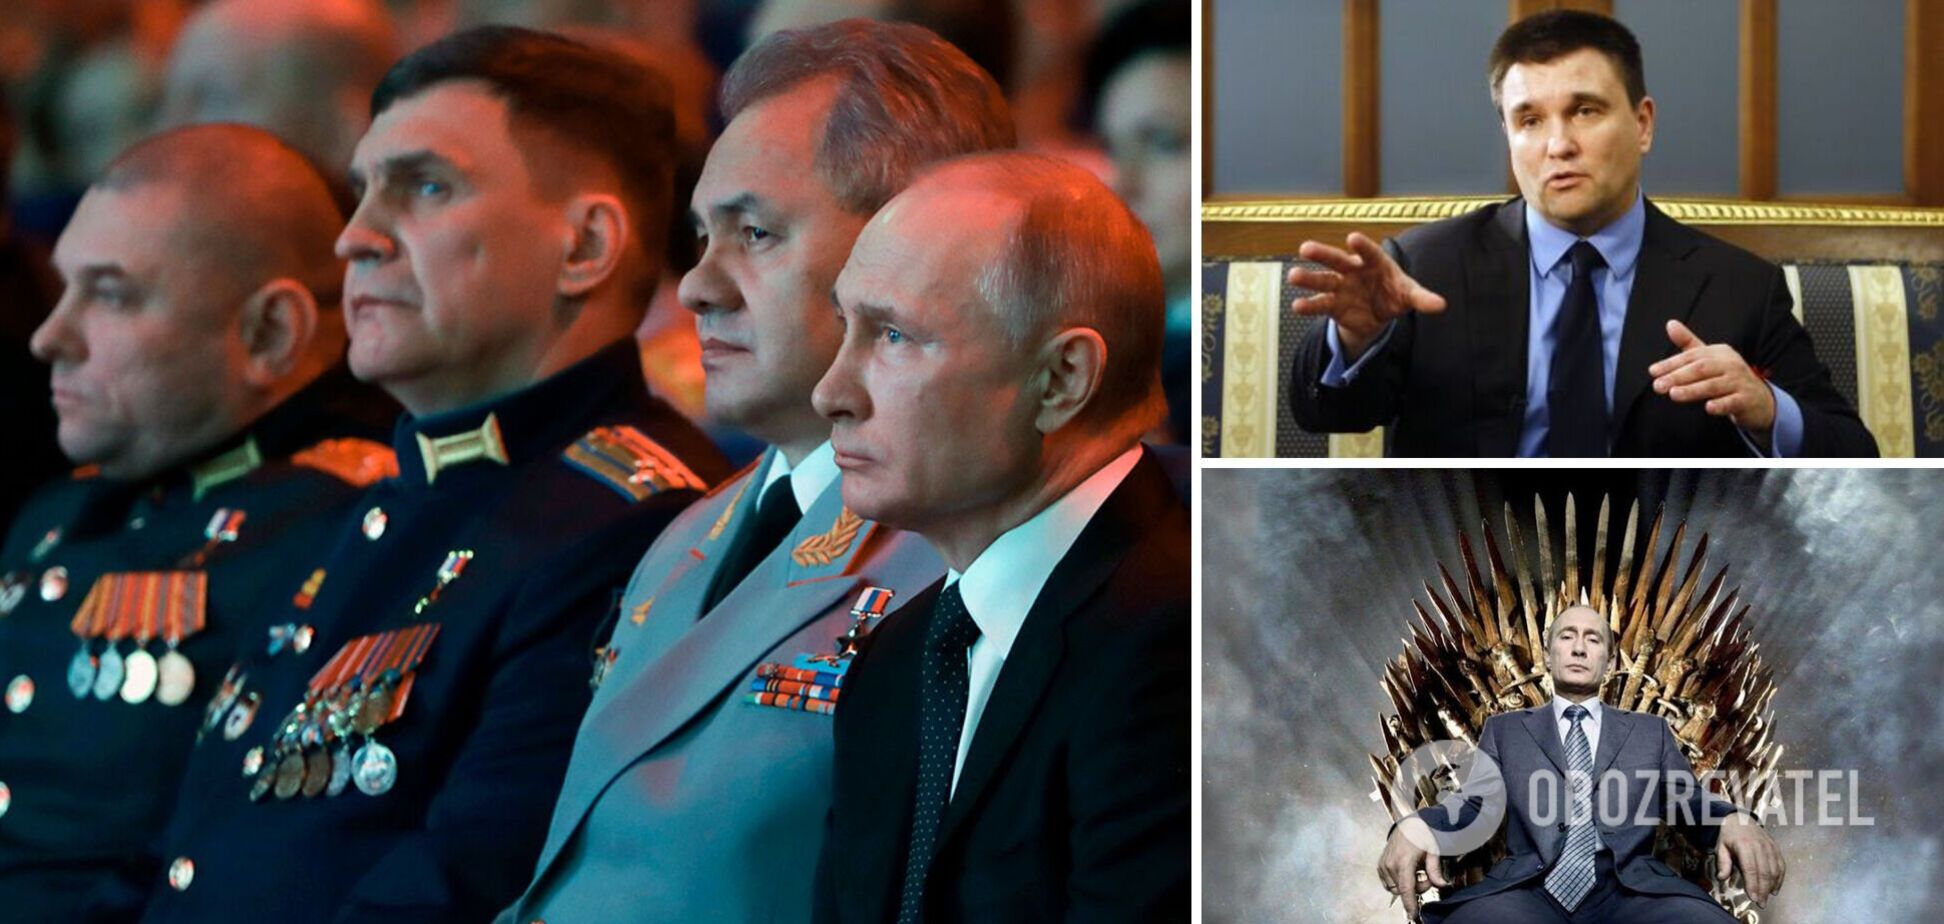 Климкин: Путин промахнулся, его ждет 'персональная перезагрузка'. Интервью